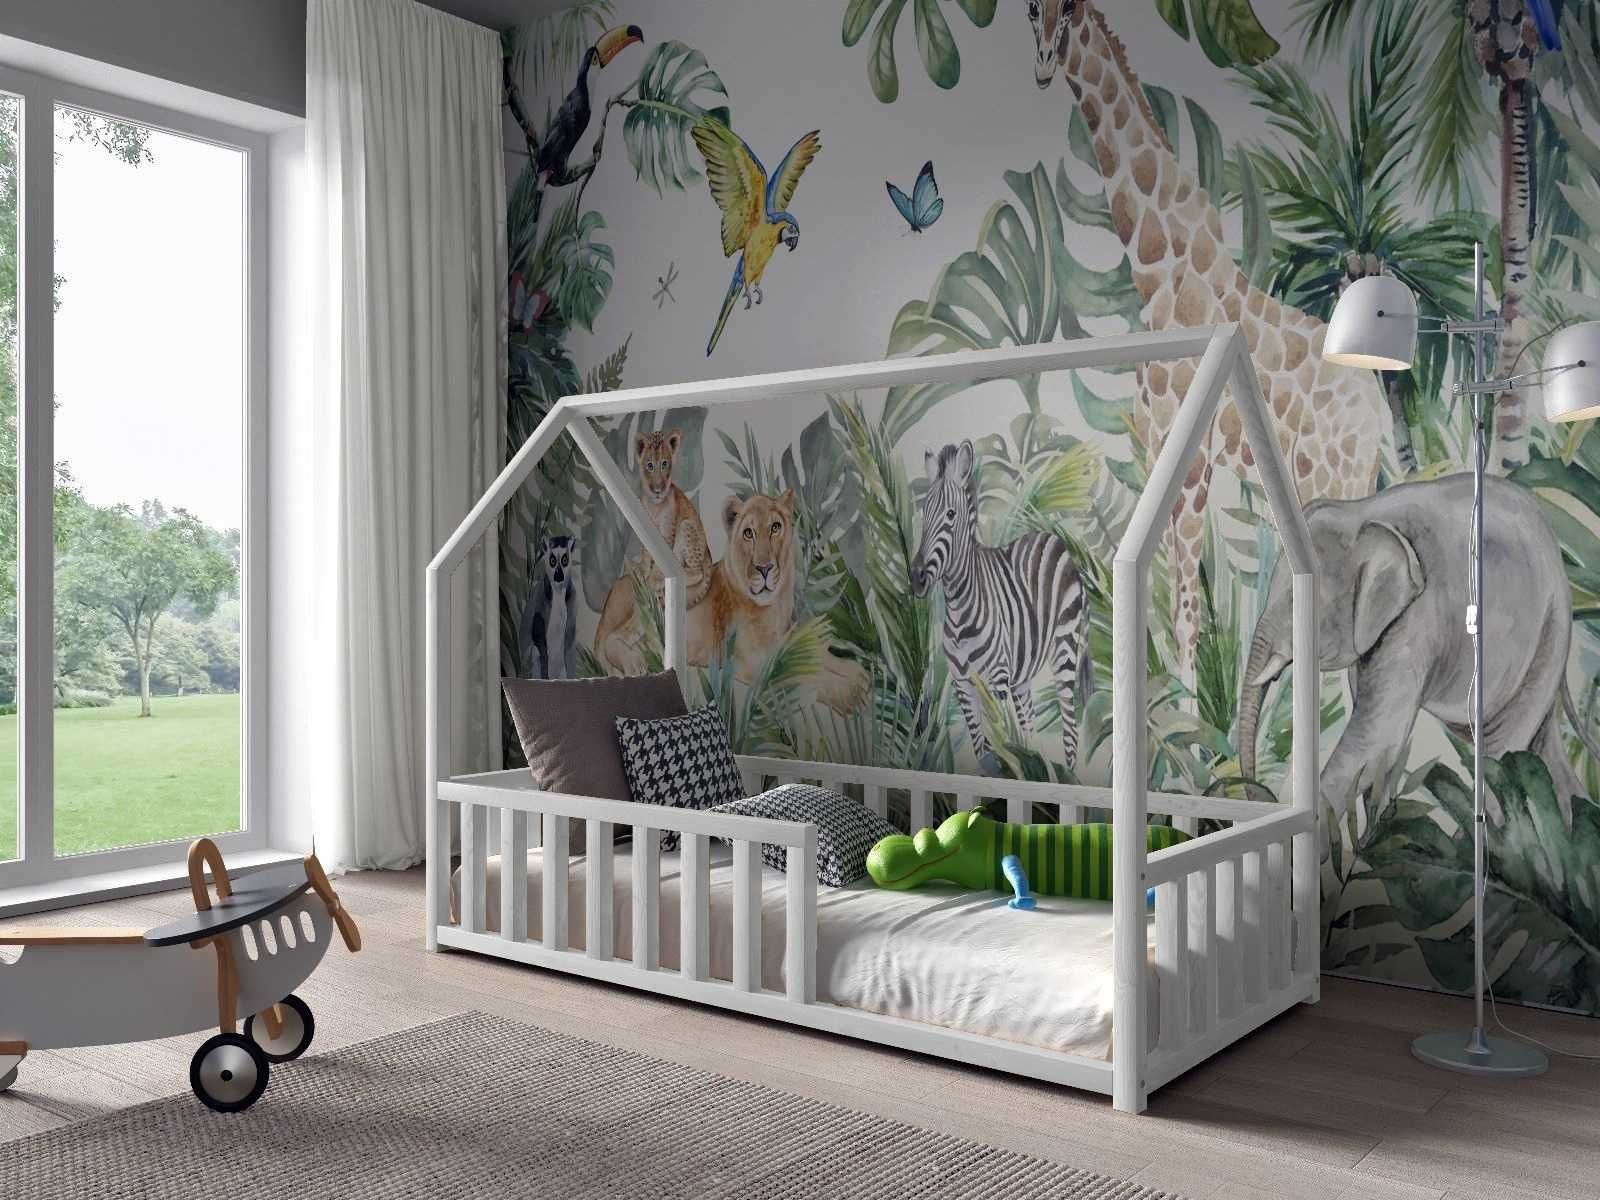 Łóżko dla dzieci DOMEK ANTOŚ - materac w zestawie GRATIS